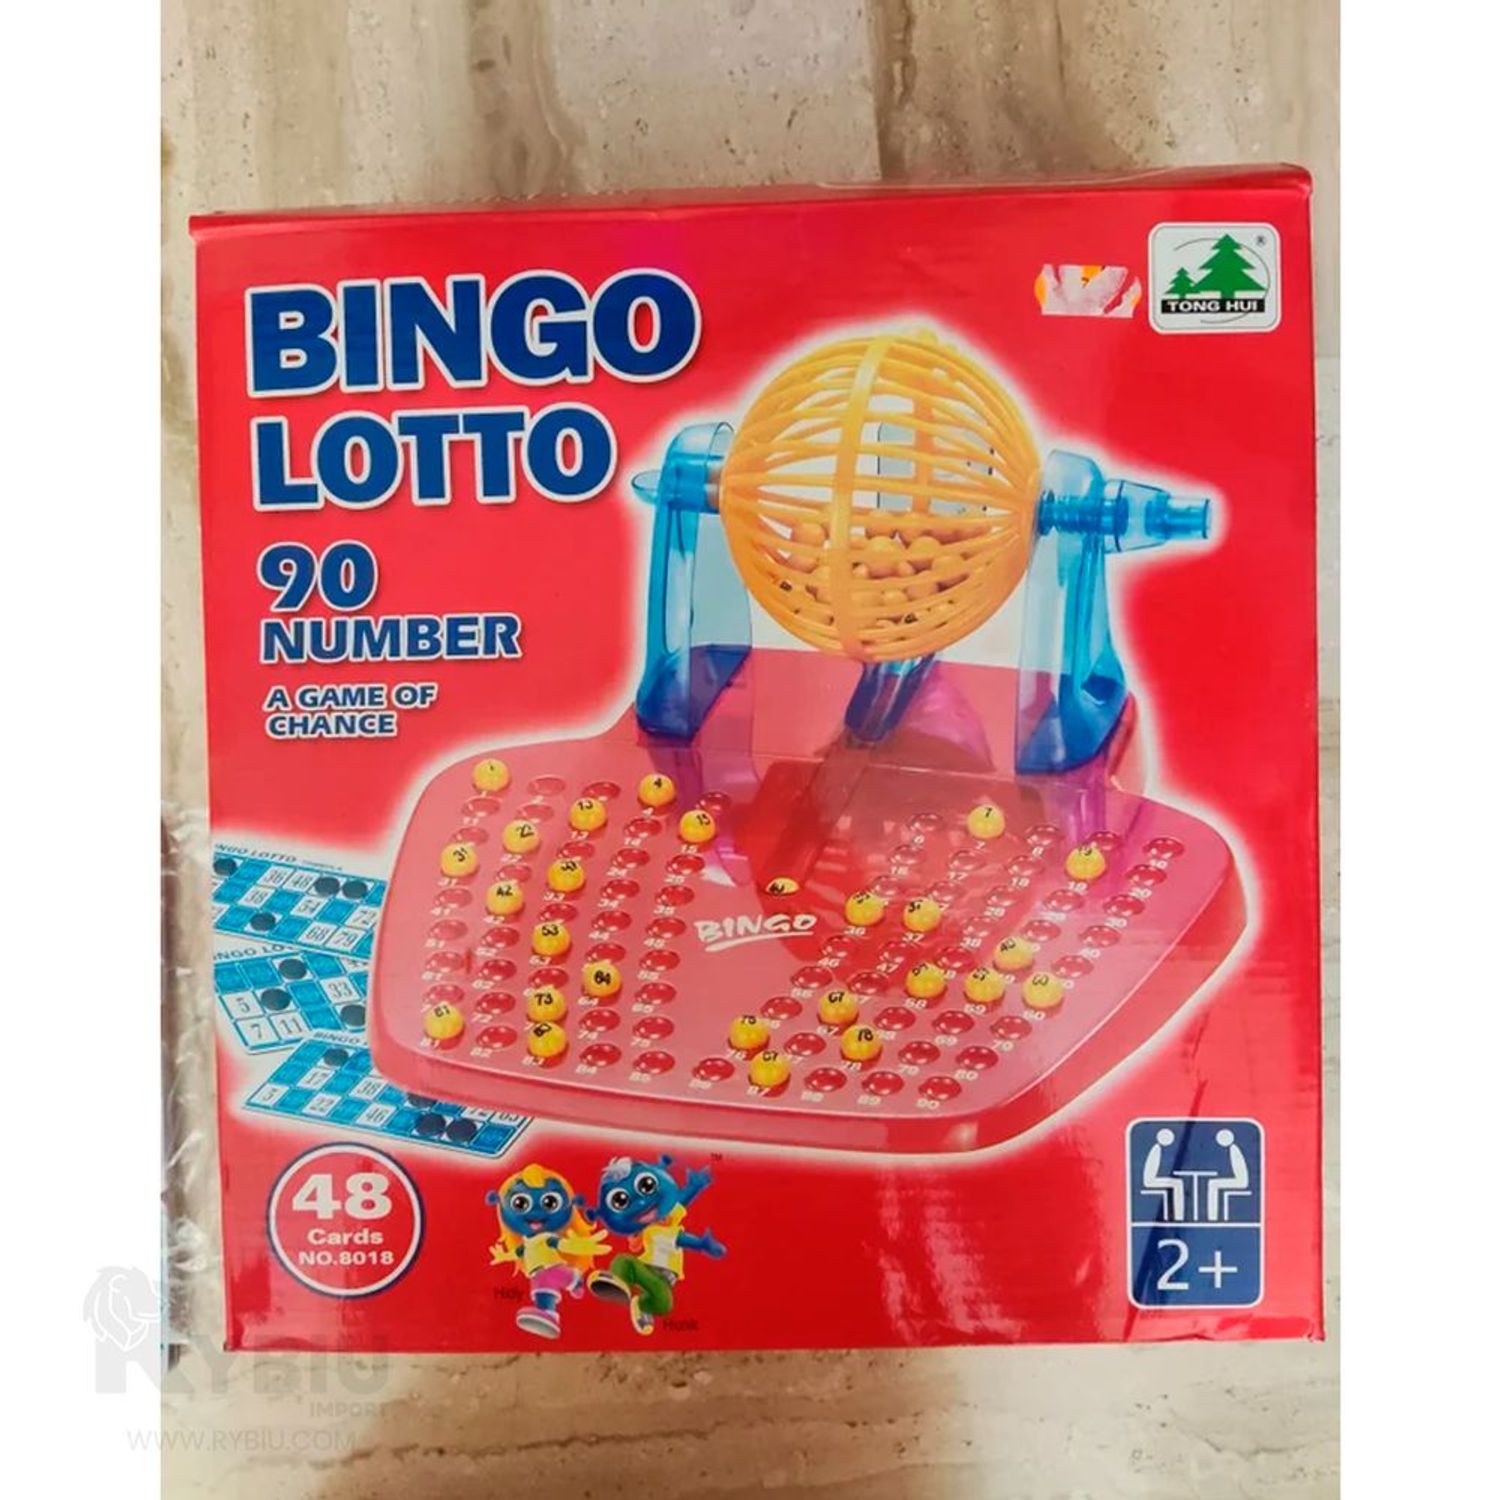 Verificación de legalidad en bingo